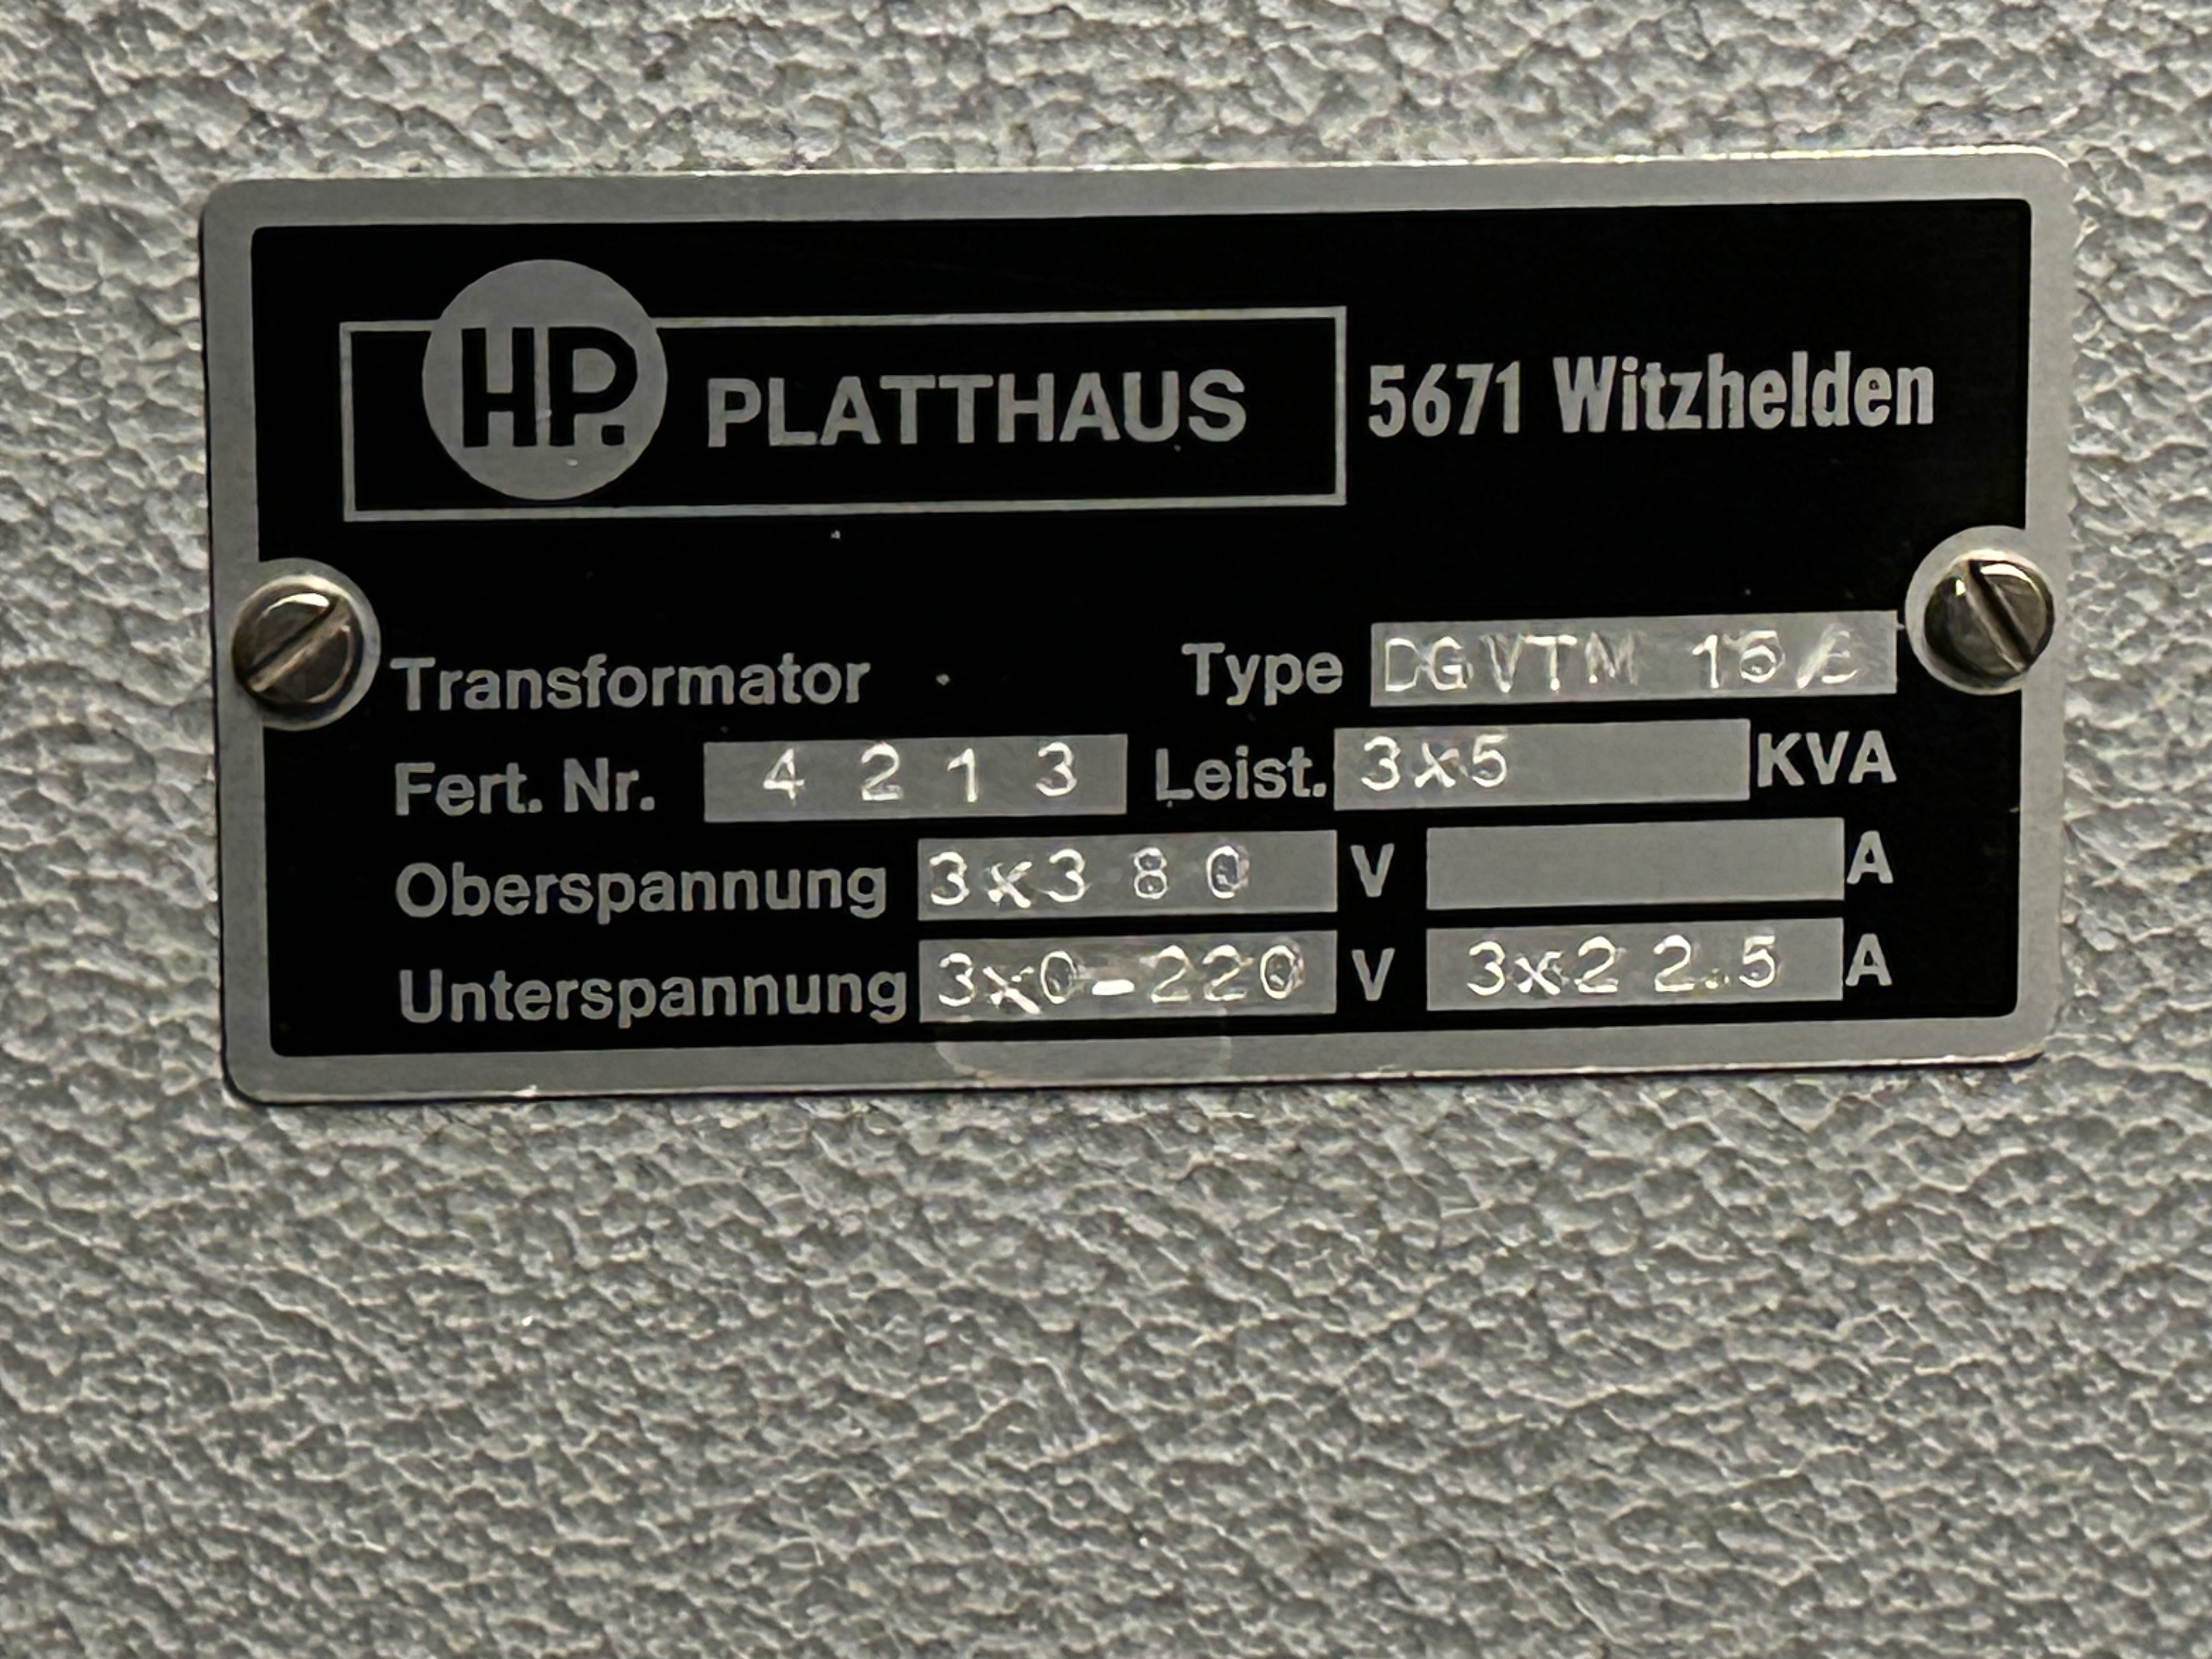 Transformator 15 kVA sparkopplad steglös utspänning_5